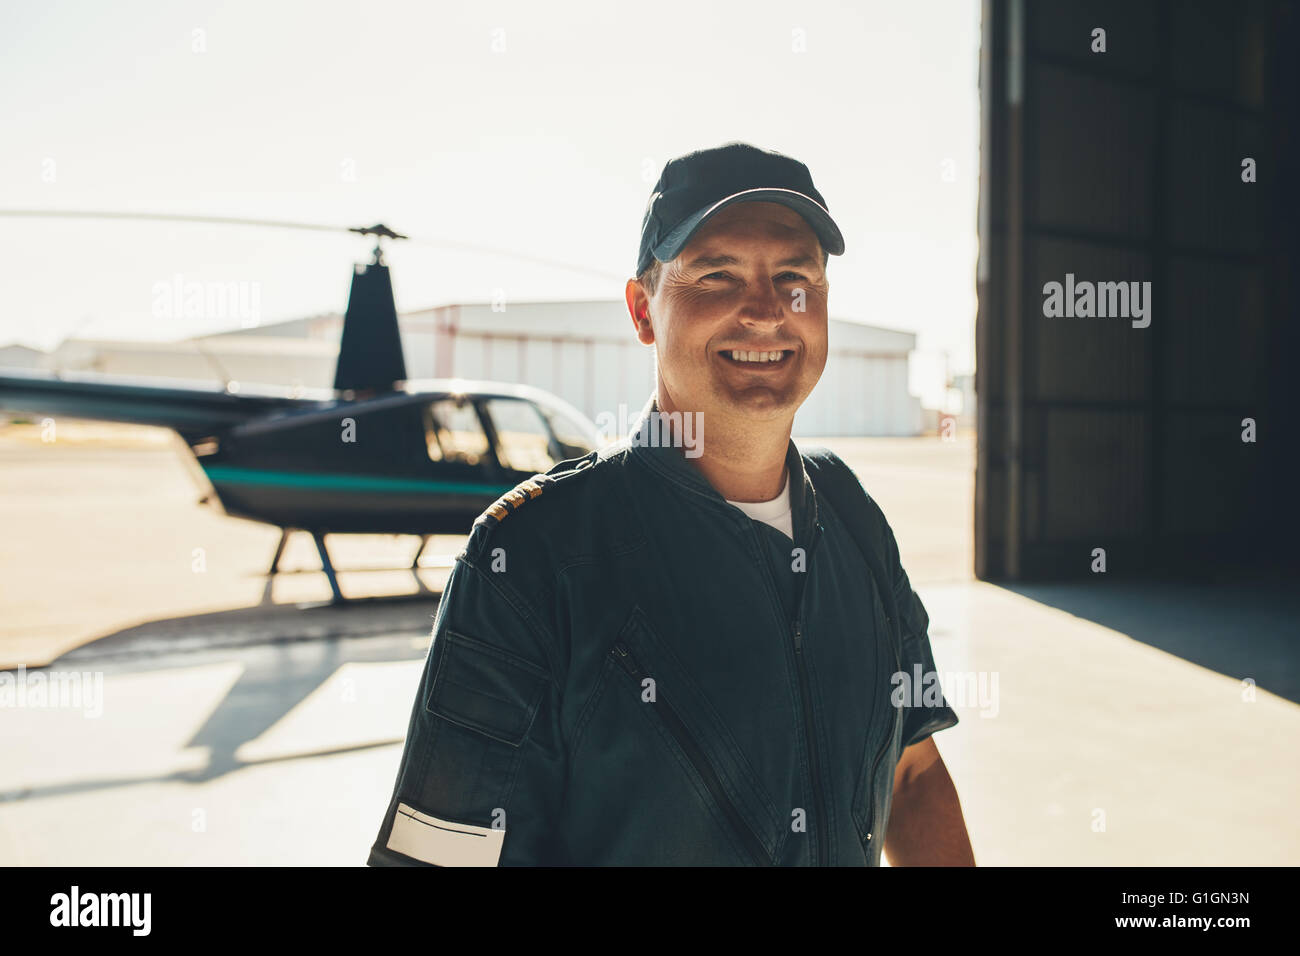 Porträt von glücklich männliche Piloten stehen im Flugzeughangar mit einem Hubschrauber im Hintergrund Stockfoto